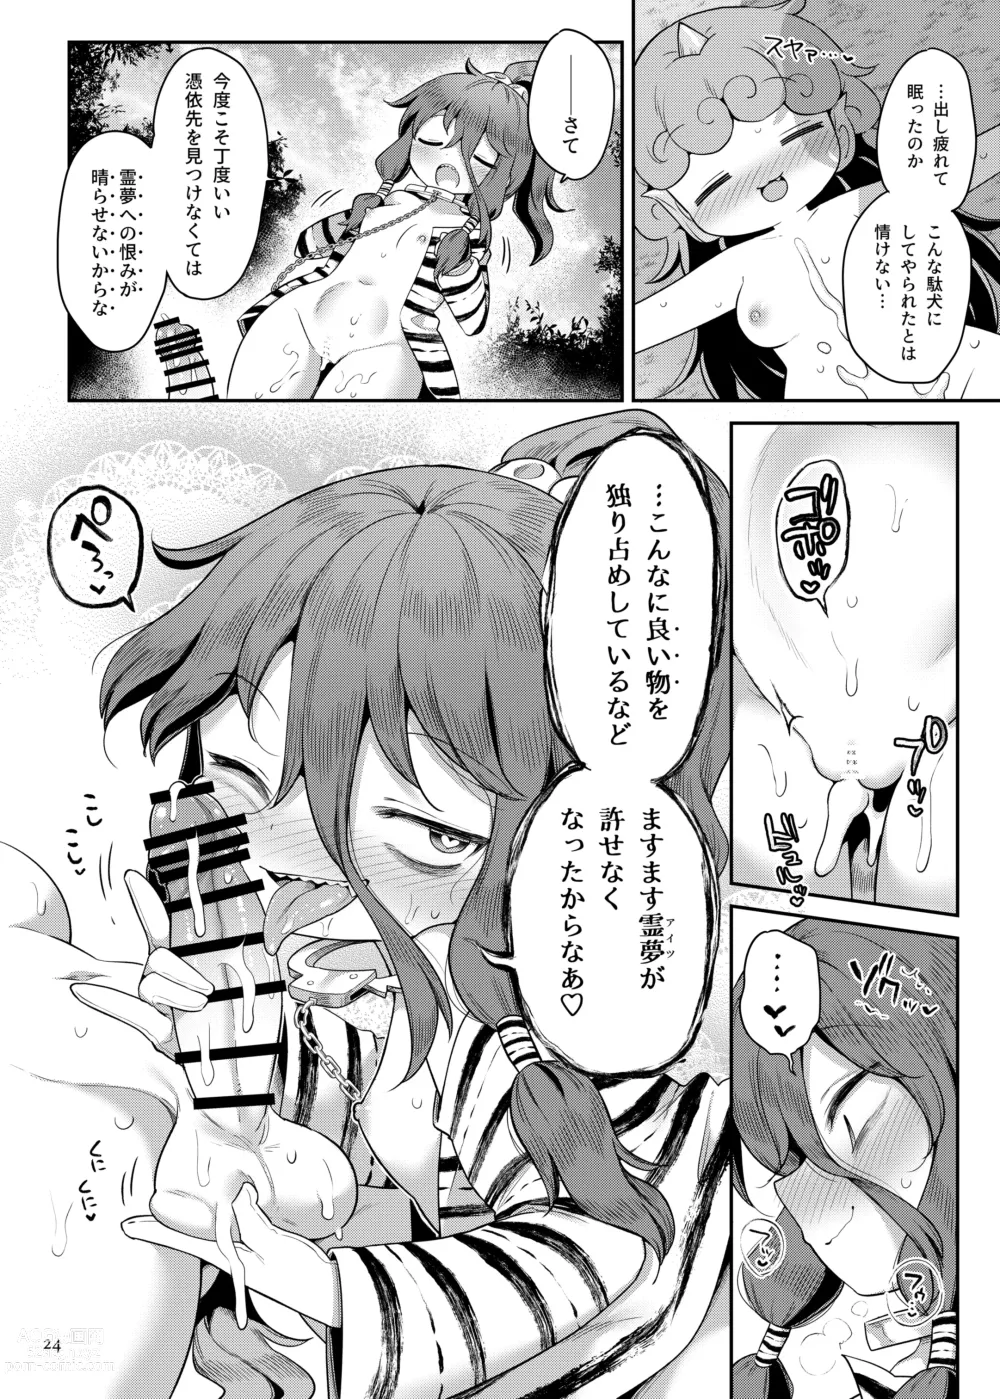 Page 24 of doujinshi Komano Aunn no Onryou Taiji